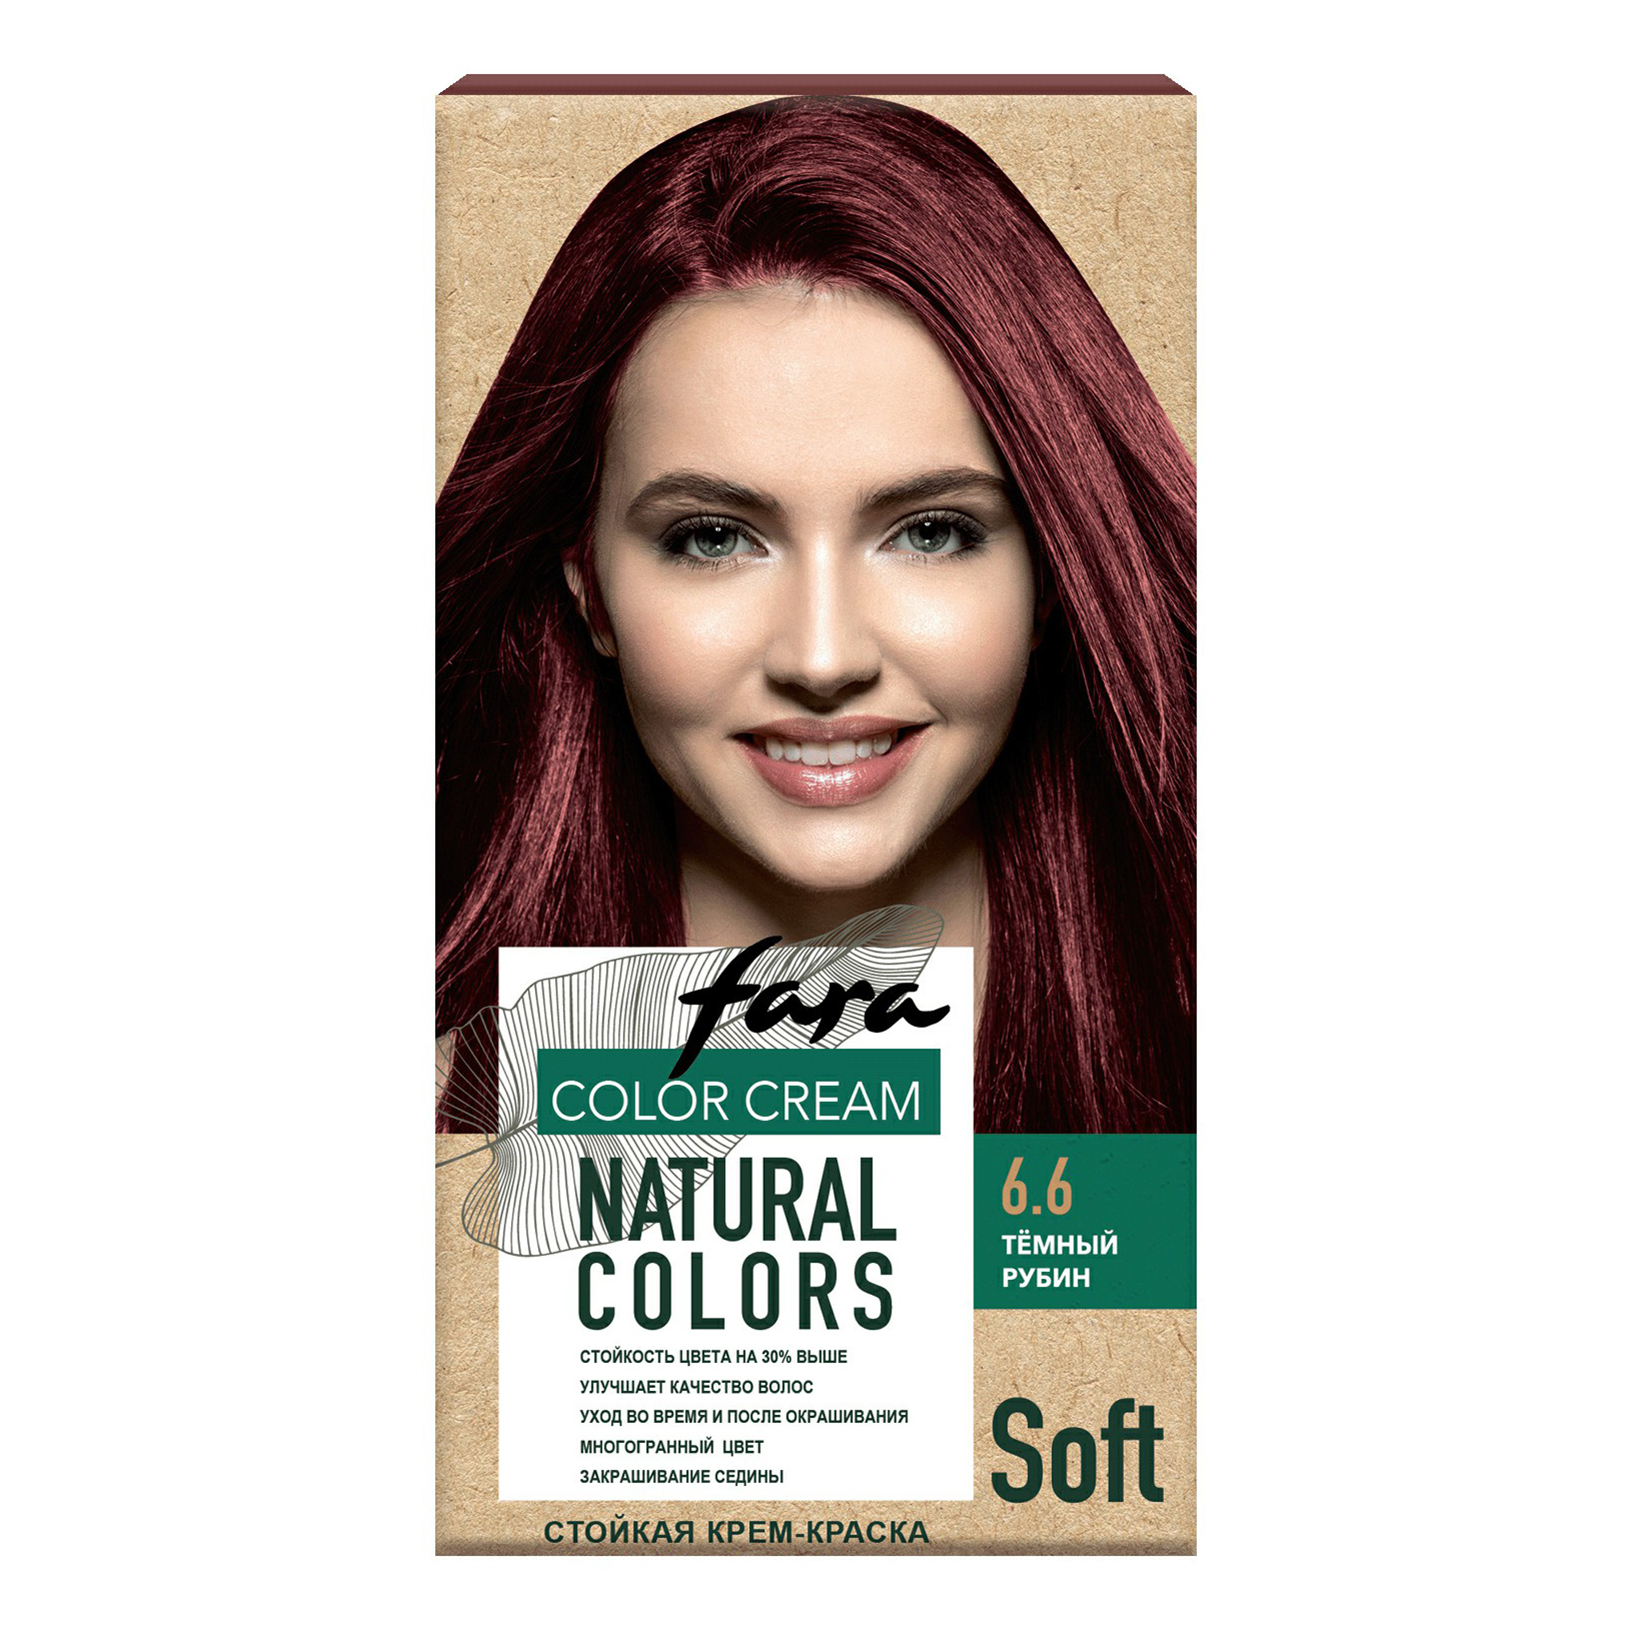 Крем-краска для волос Fara Natural Colors Soft 324 Темный рубин 150 мл крем краска для волос без аммиака soft touch большой объём 55040 5 0 темный блондин 100 мл